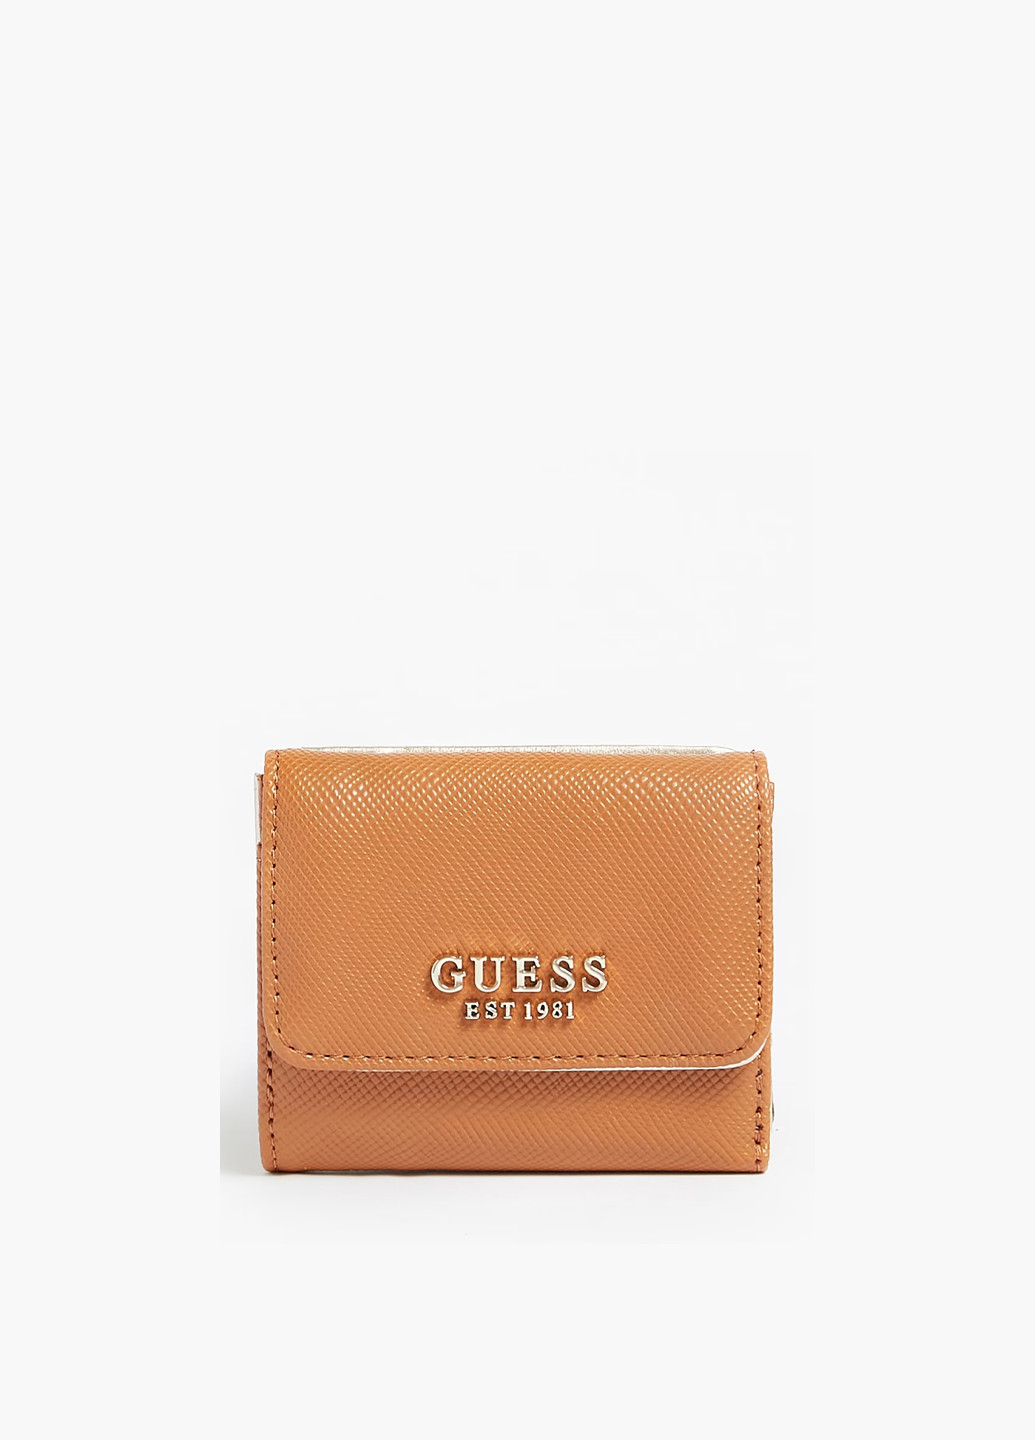 Кошелек женский из эко кожи Guess laurel slg card & coin purse (274824970)